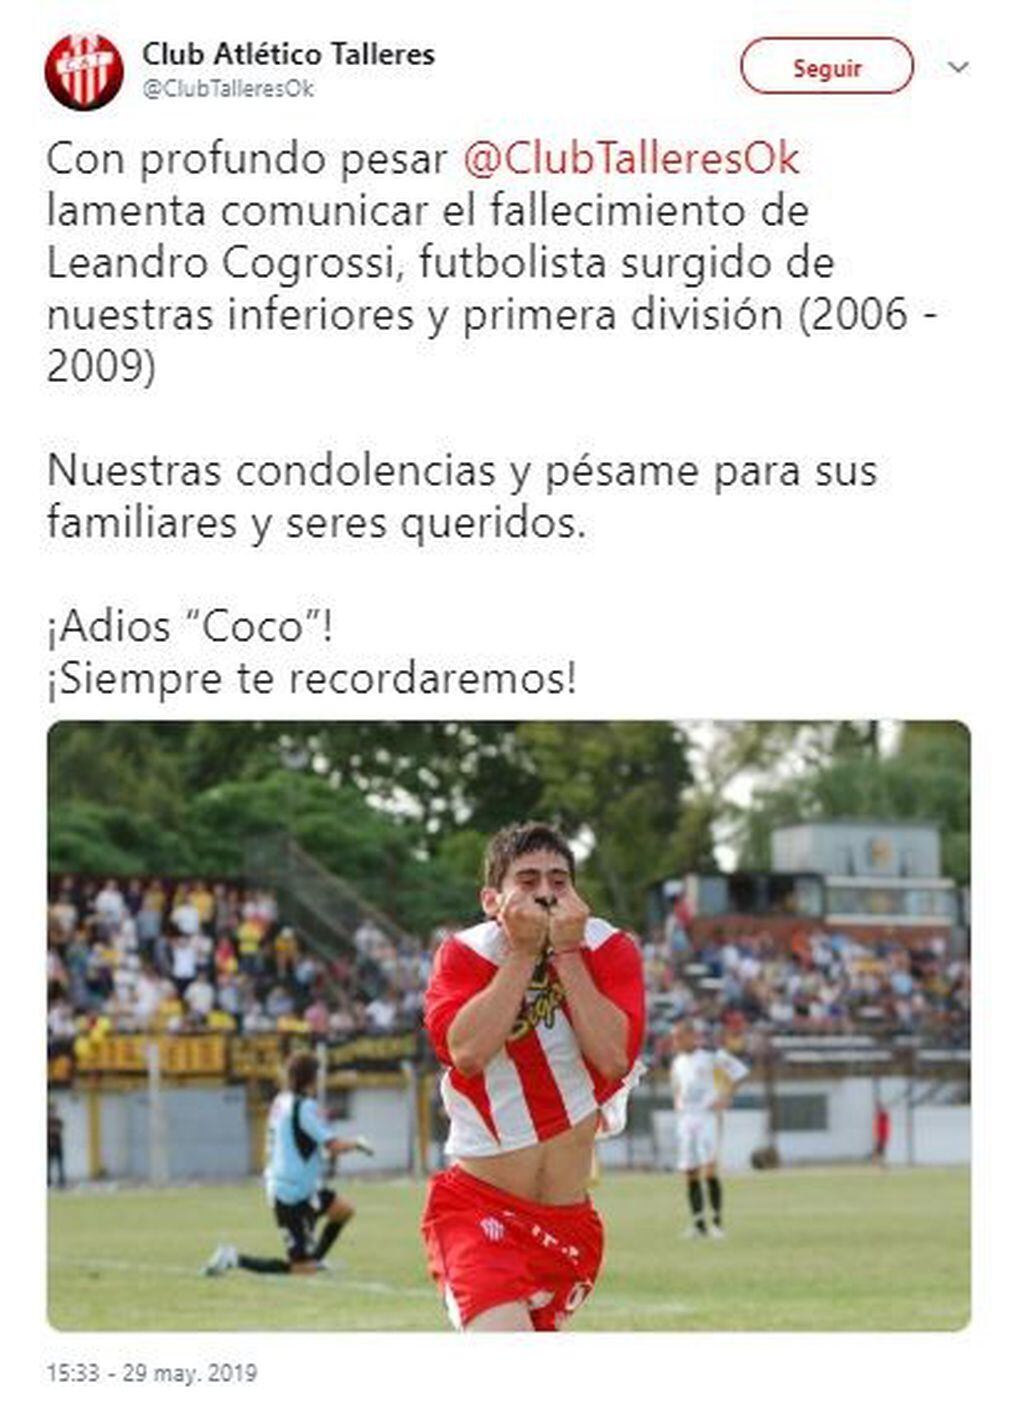 El mensaje de Talleres RE por el fallecimiento de Leandro Cogrossi (Foto: Twitter)